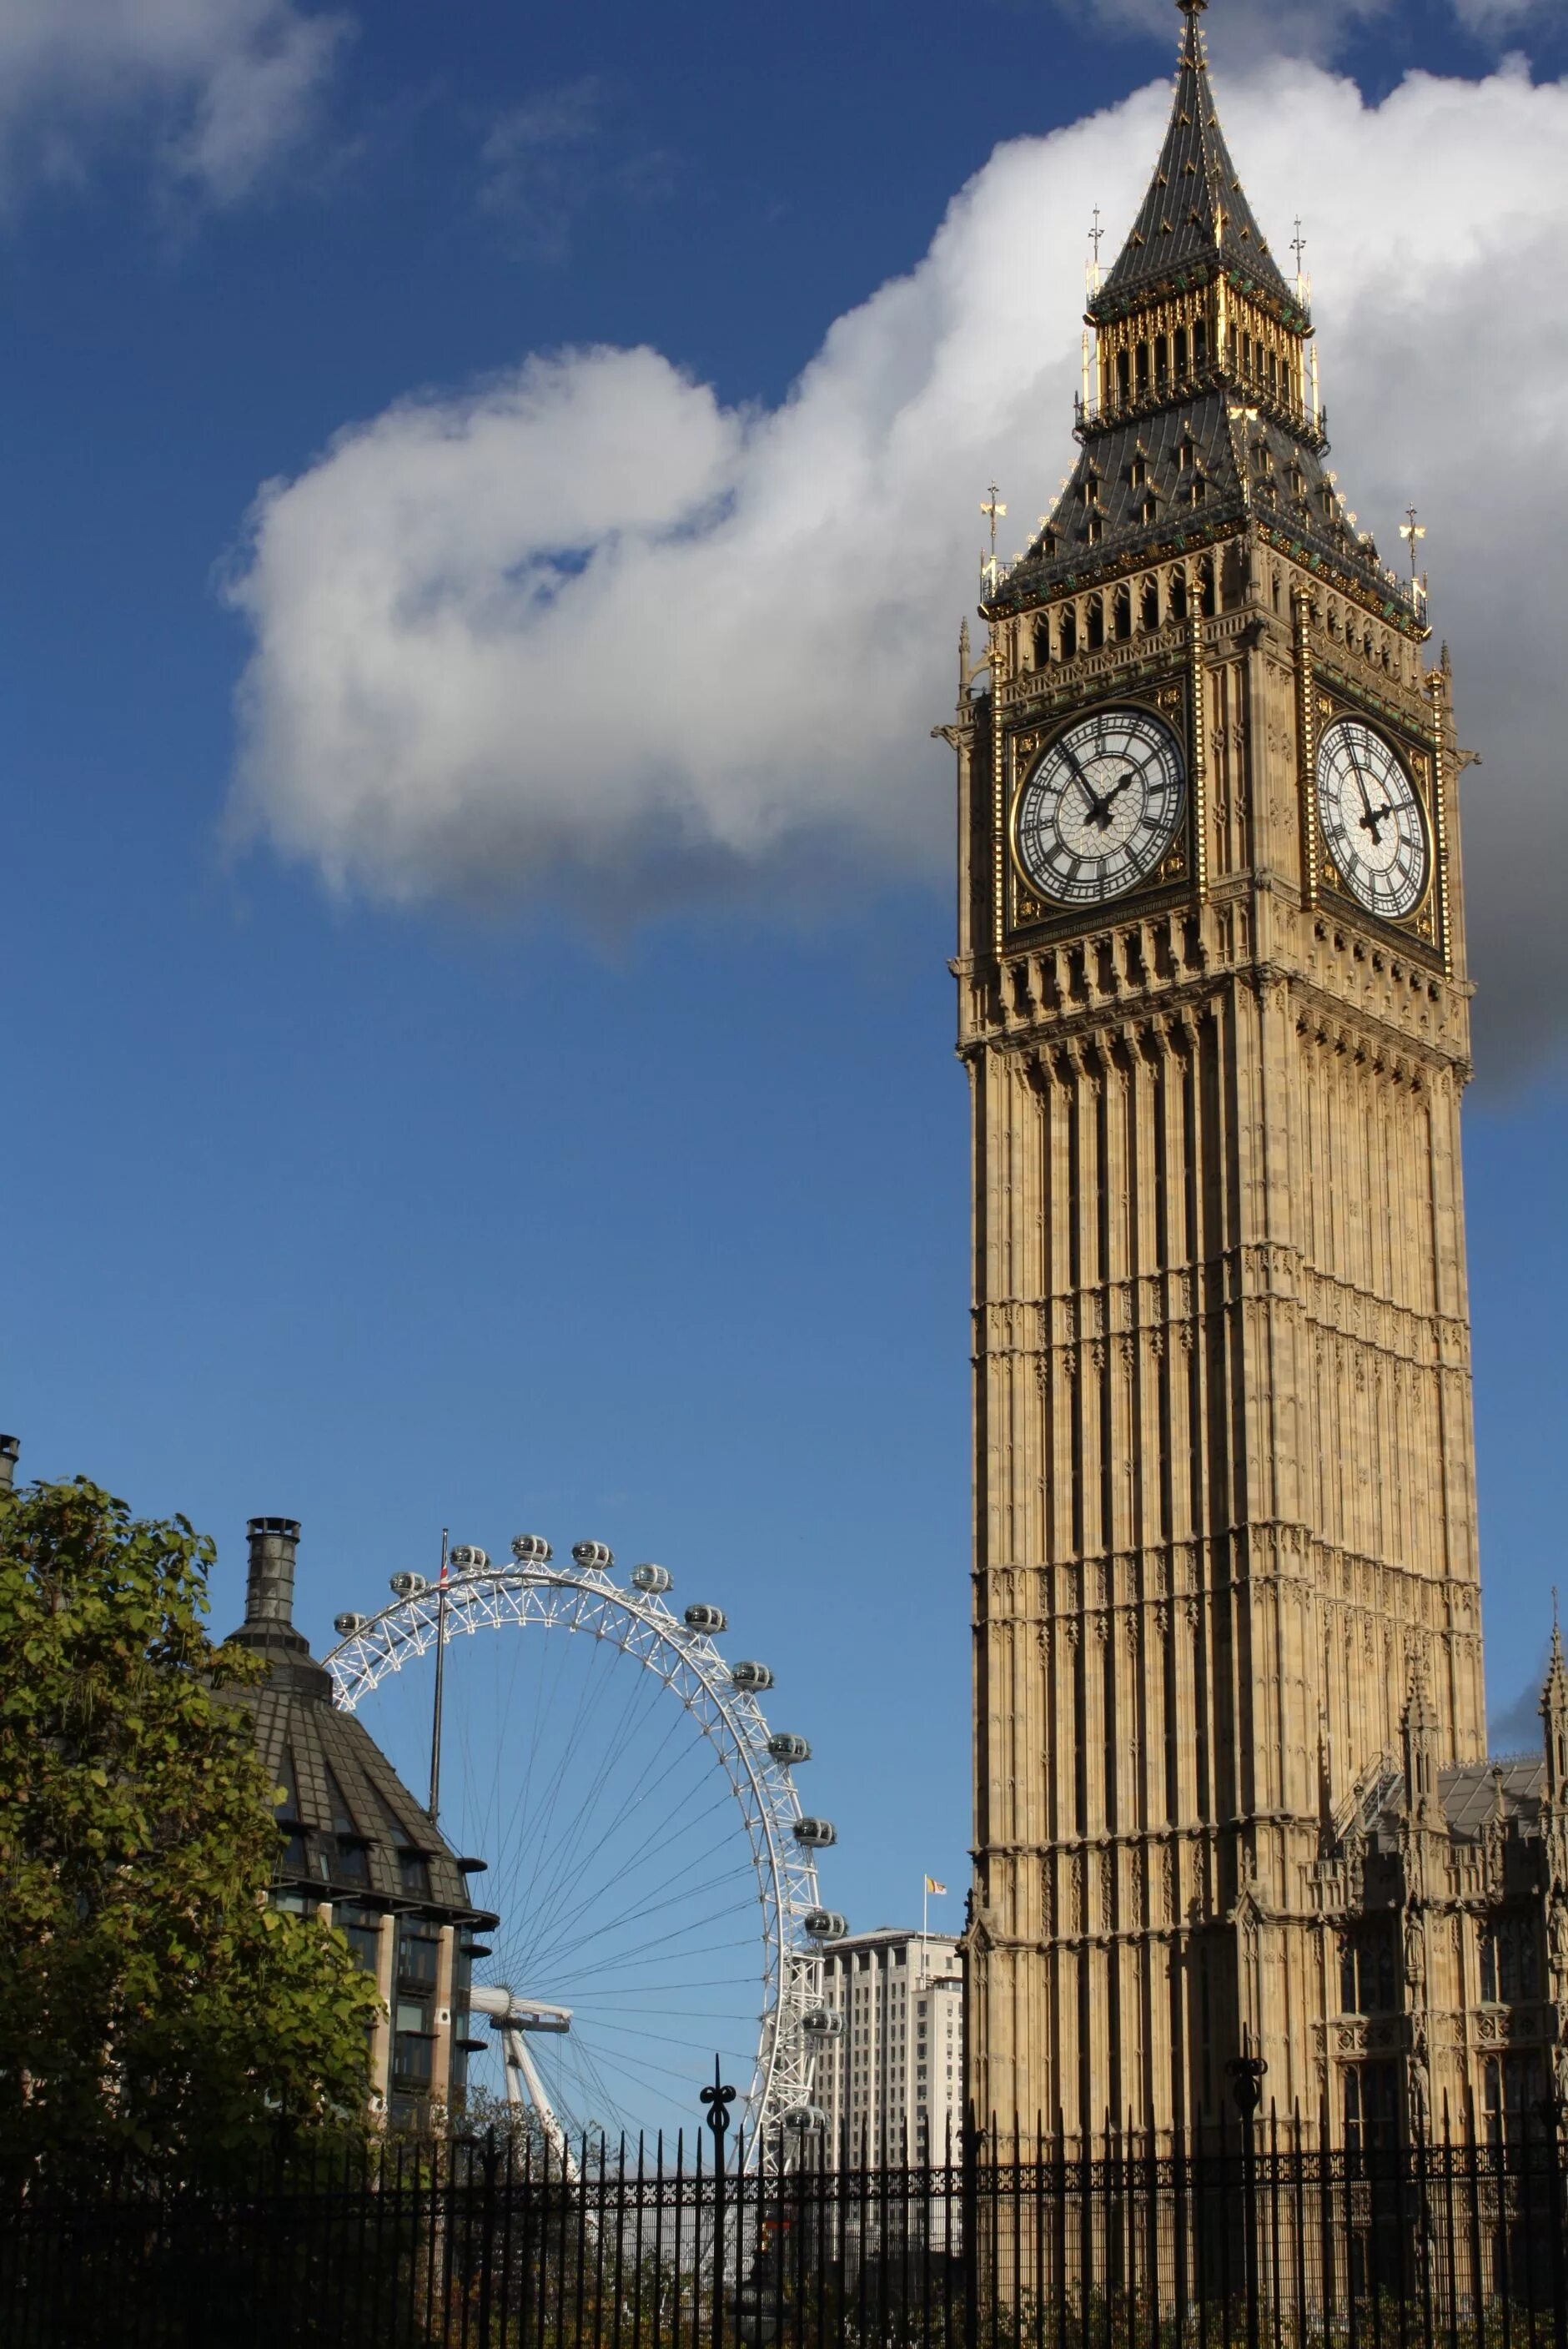 Watching britain. Лондонские часы Биг Бен. Башня Биг Бен в Лондоне. Великобритания часы Биг Бен. Биг-Бен (башня Елизаветы).